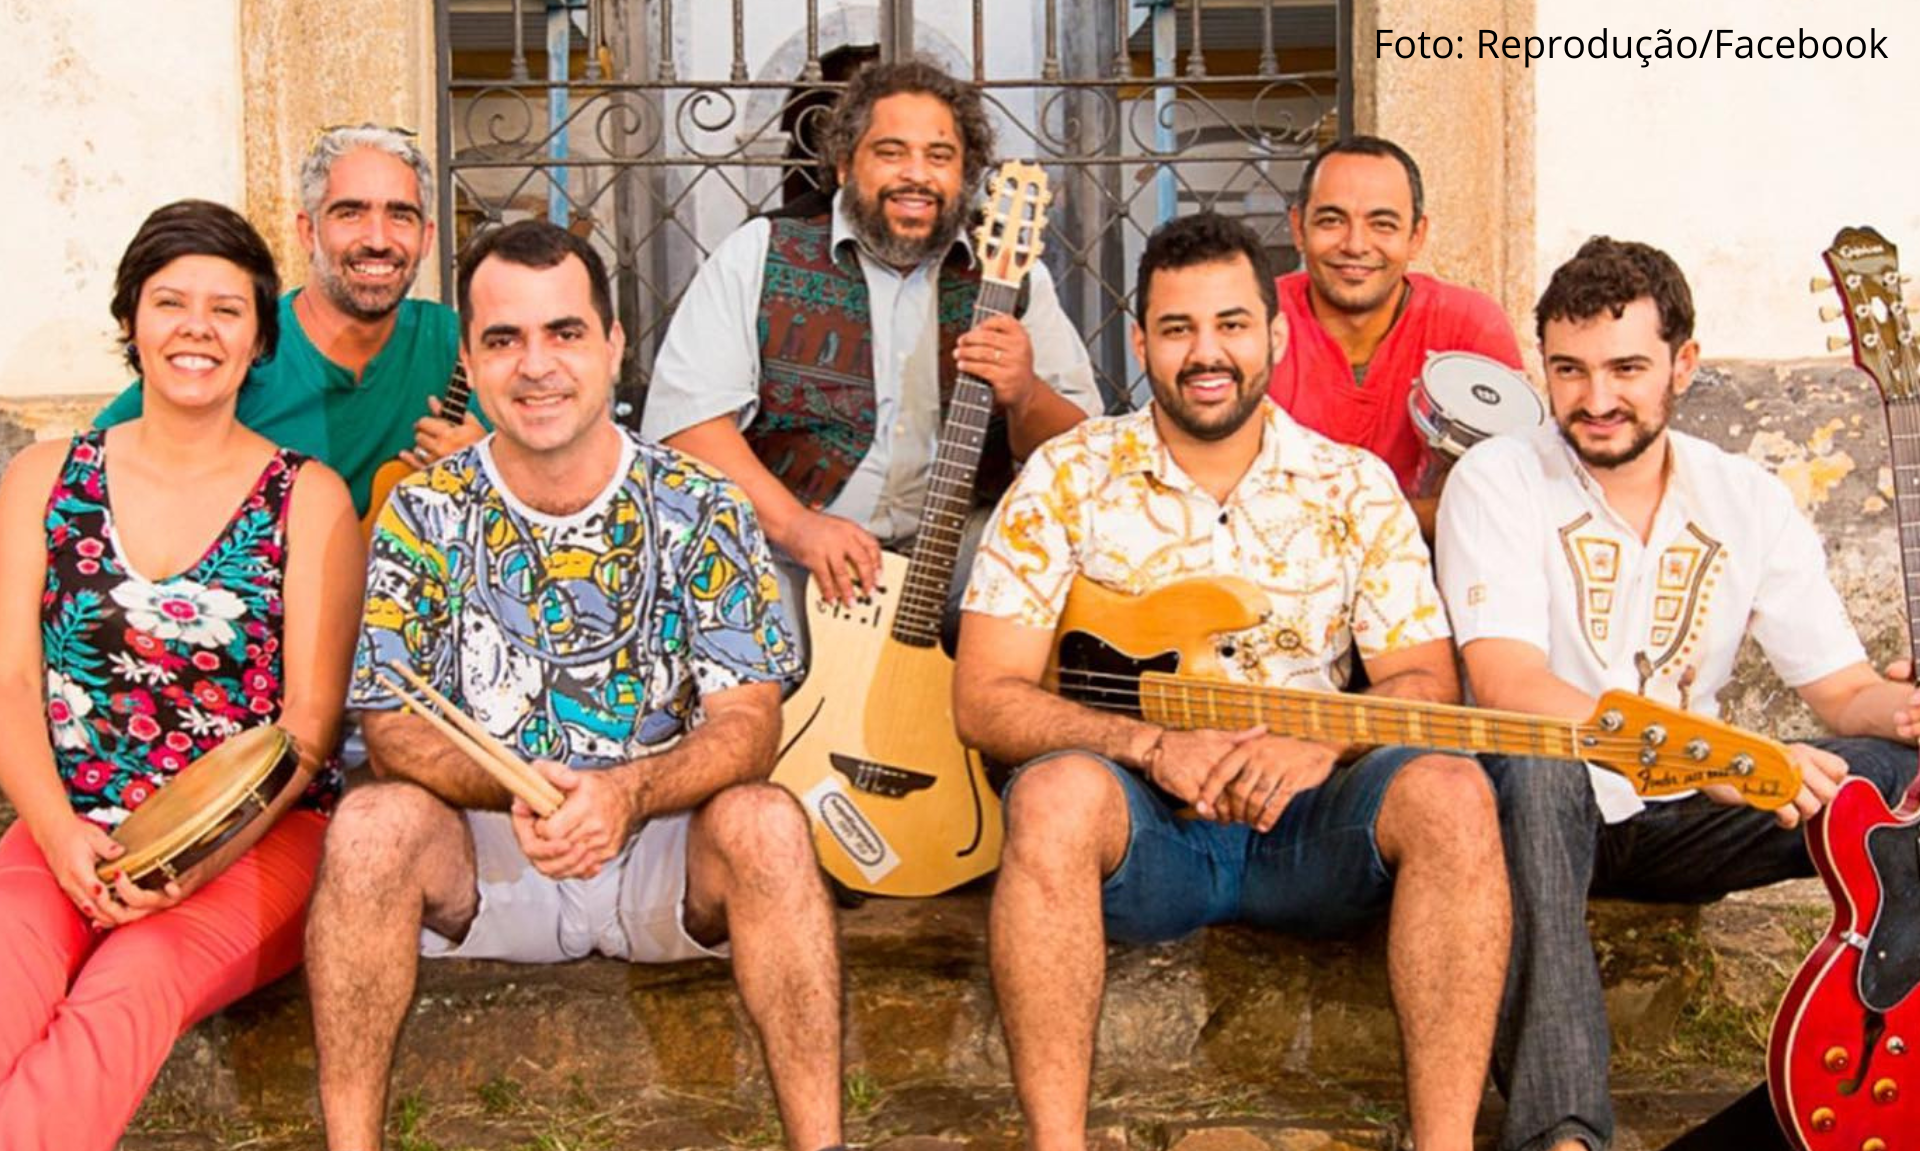 Candonguêro, grupo tradicional do carnaval de Ouro Preto, se apresenta na próxima semana